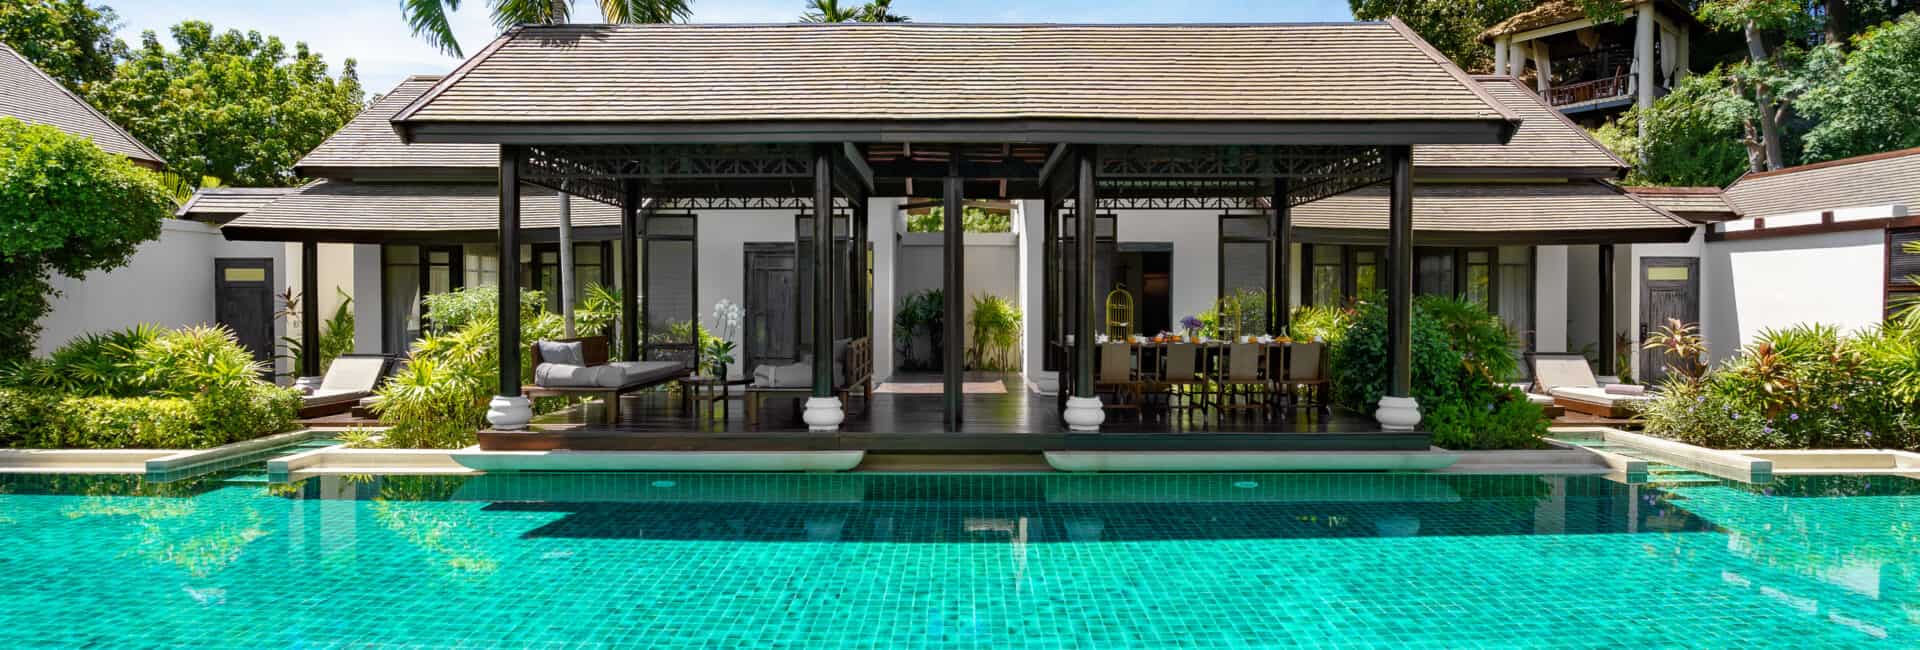 Anantara Lawana Koh Samui Resort - Fourd Bedroom Residence Villa